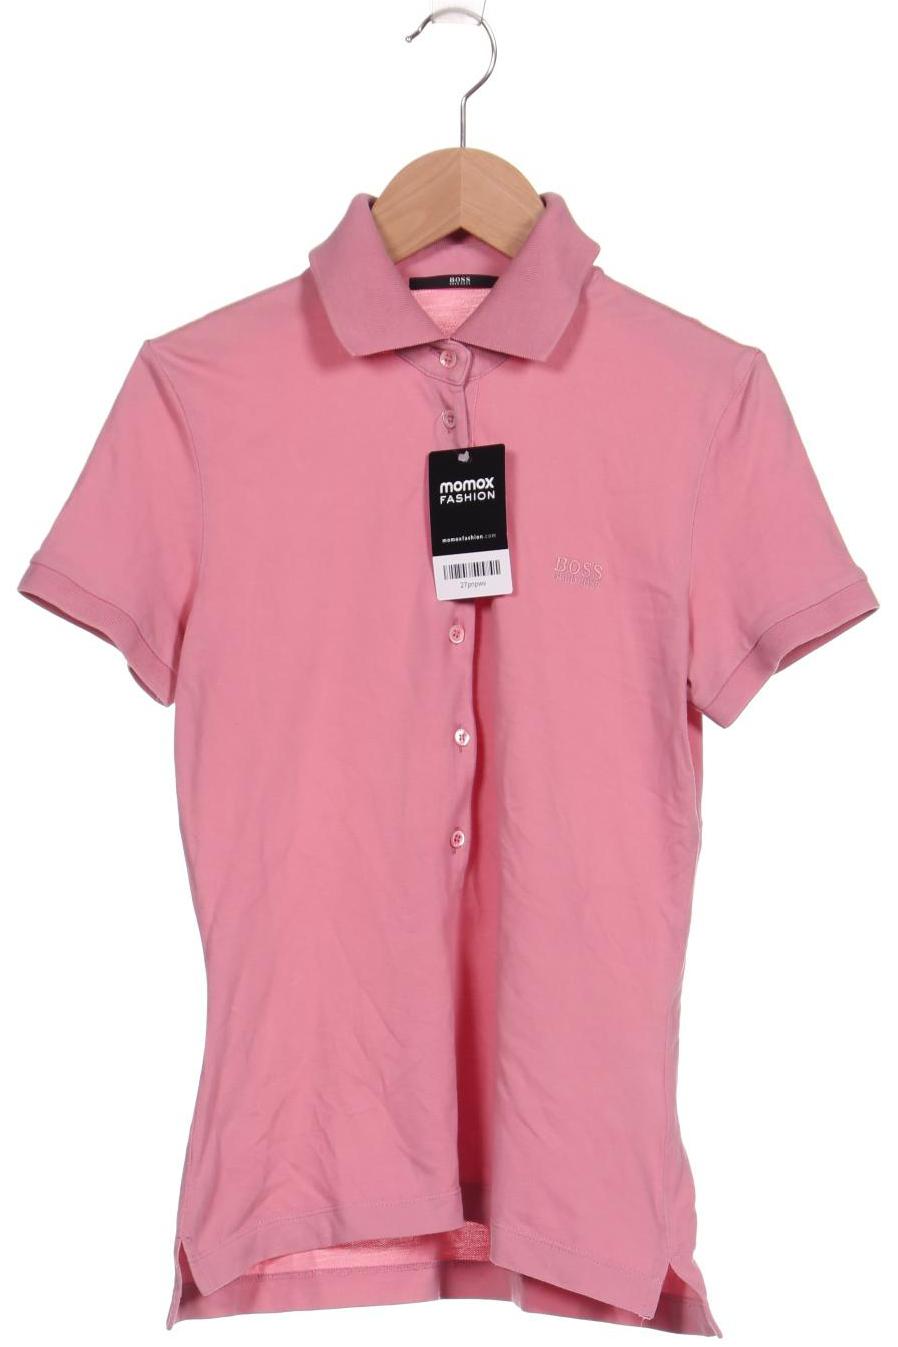 BOSS by Hugo Boss Damen Poloshirt, pink von BOSS by Hugo Boss